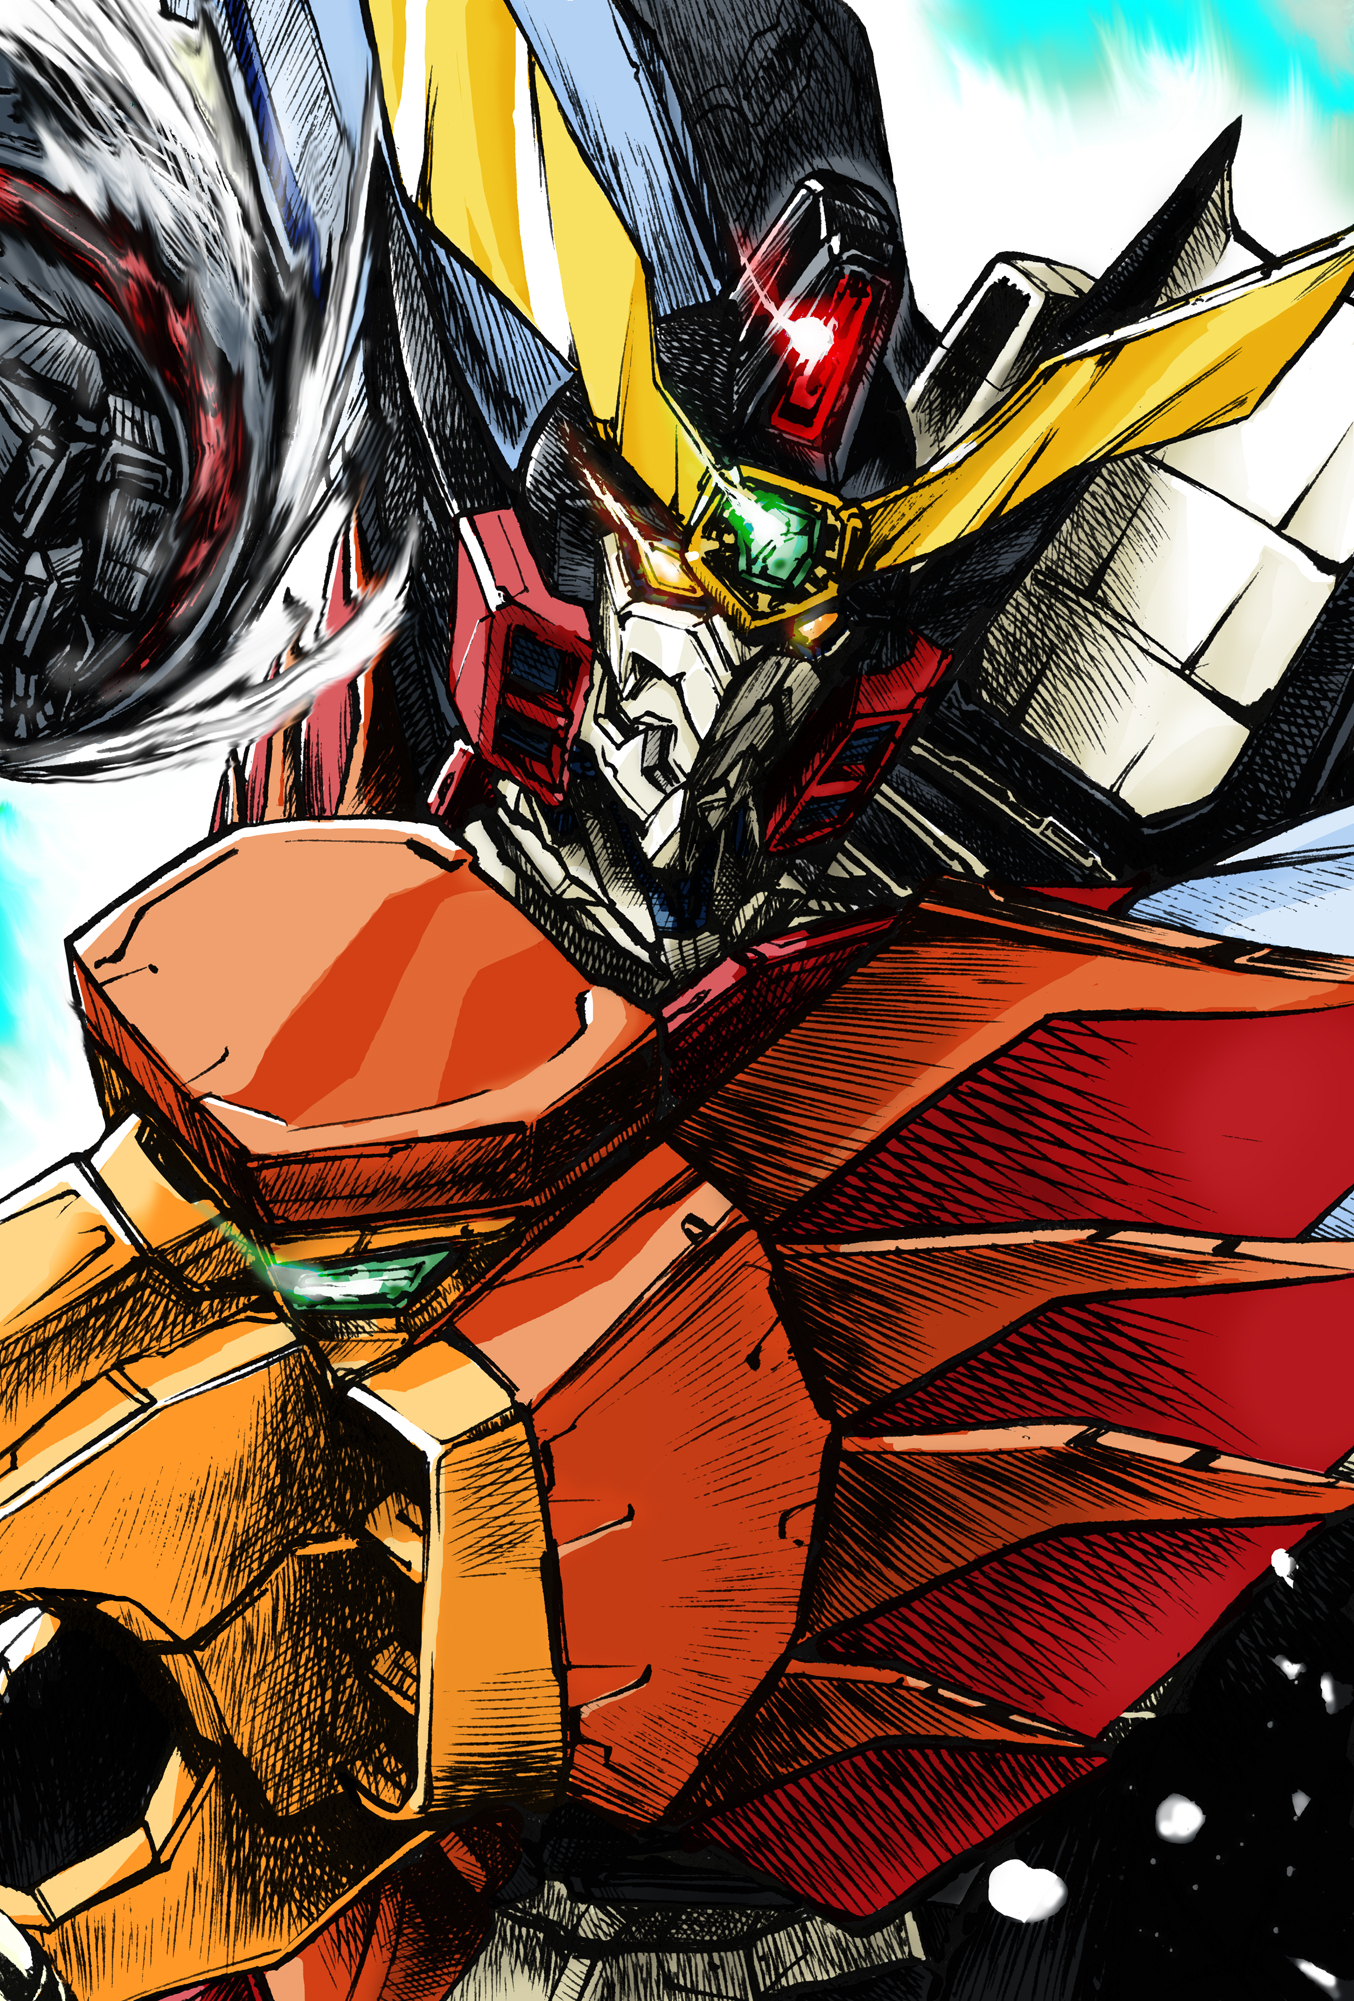 Anime 1354x2001 anime Super Robot Taisen The King of Braves Gaogaigar Gaogaigar artwork digital art fan art mechs